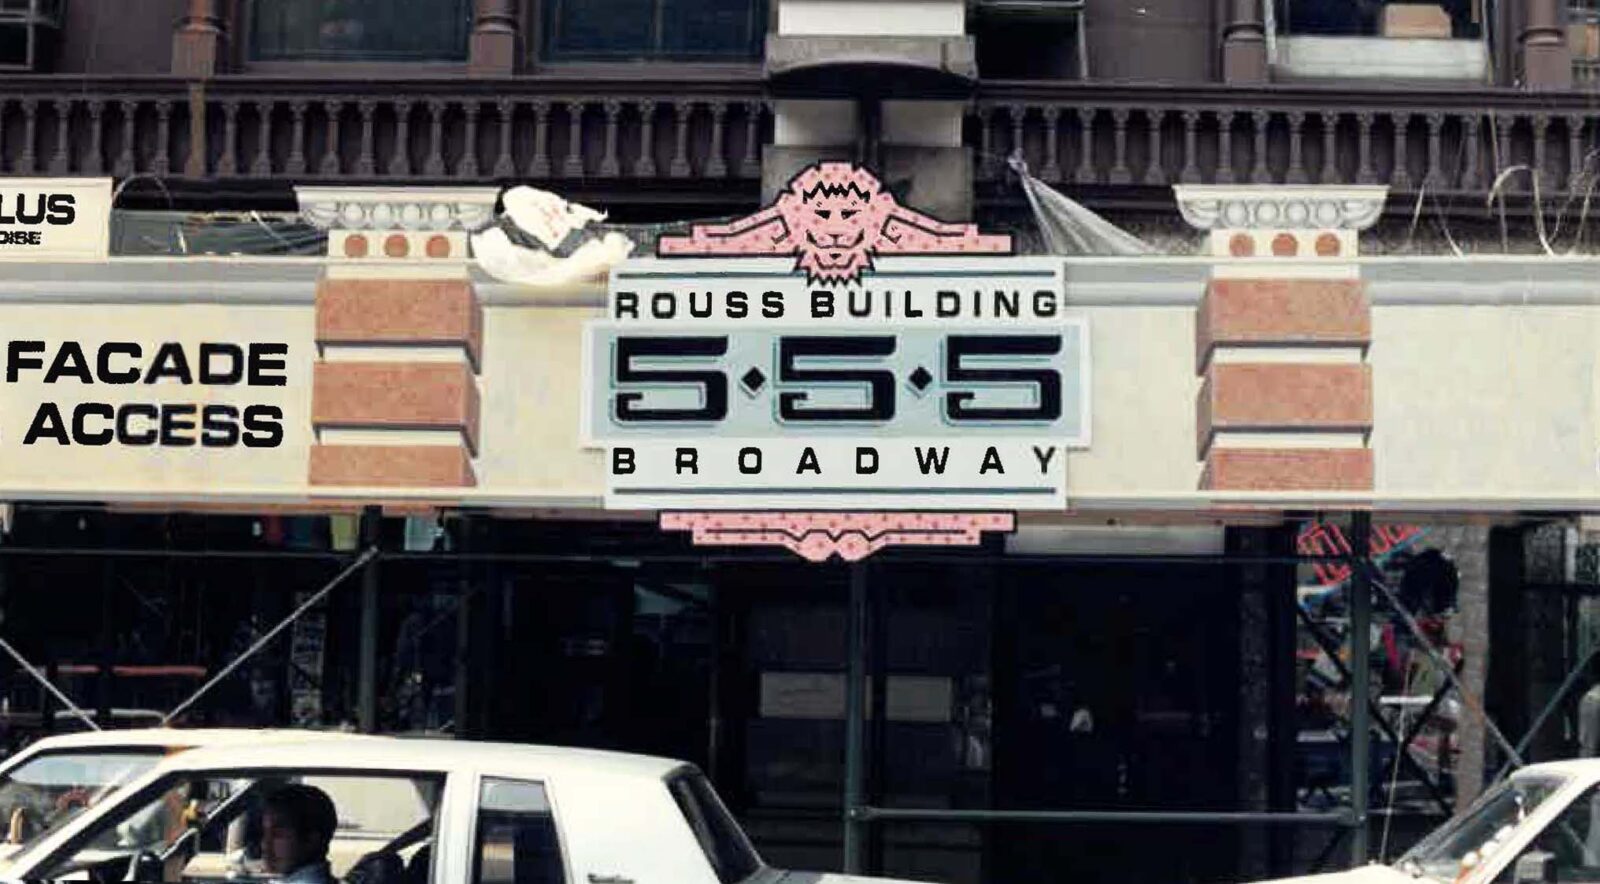 Rouss Building